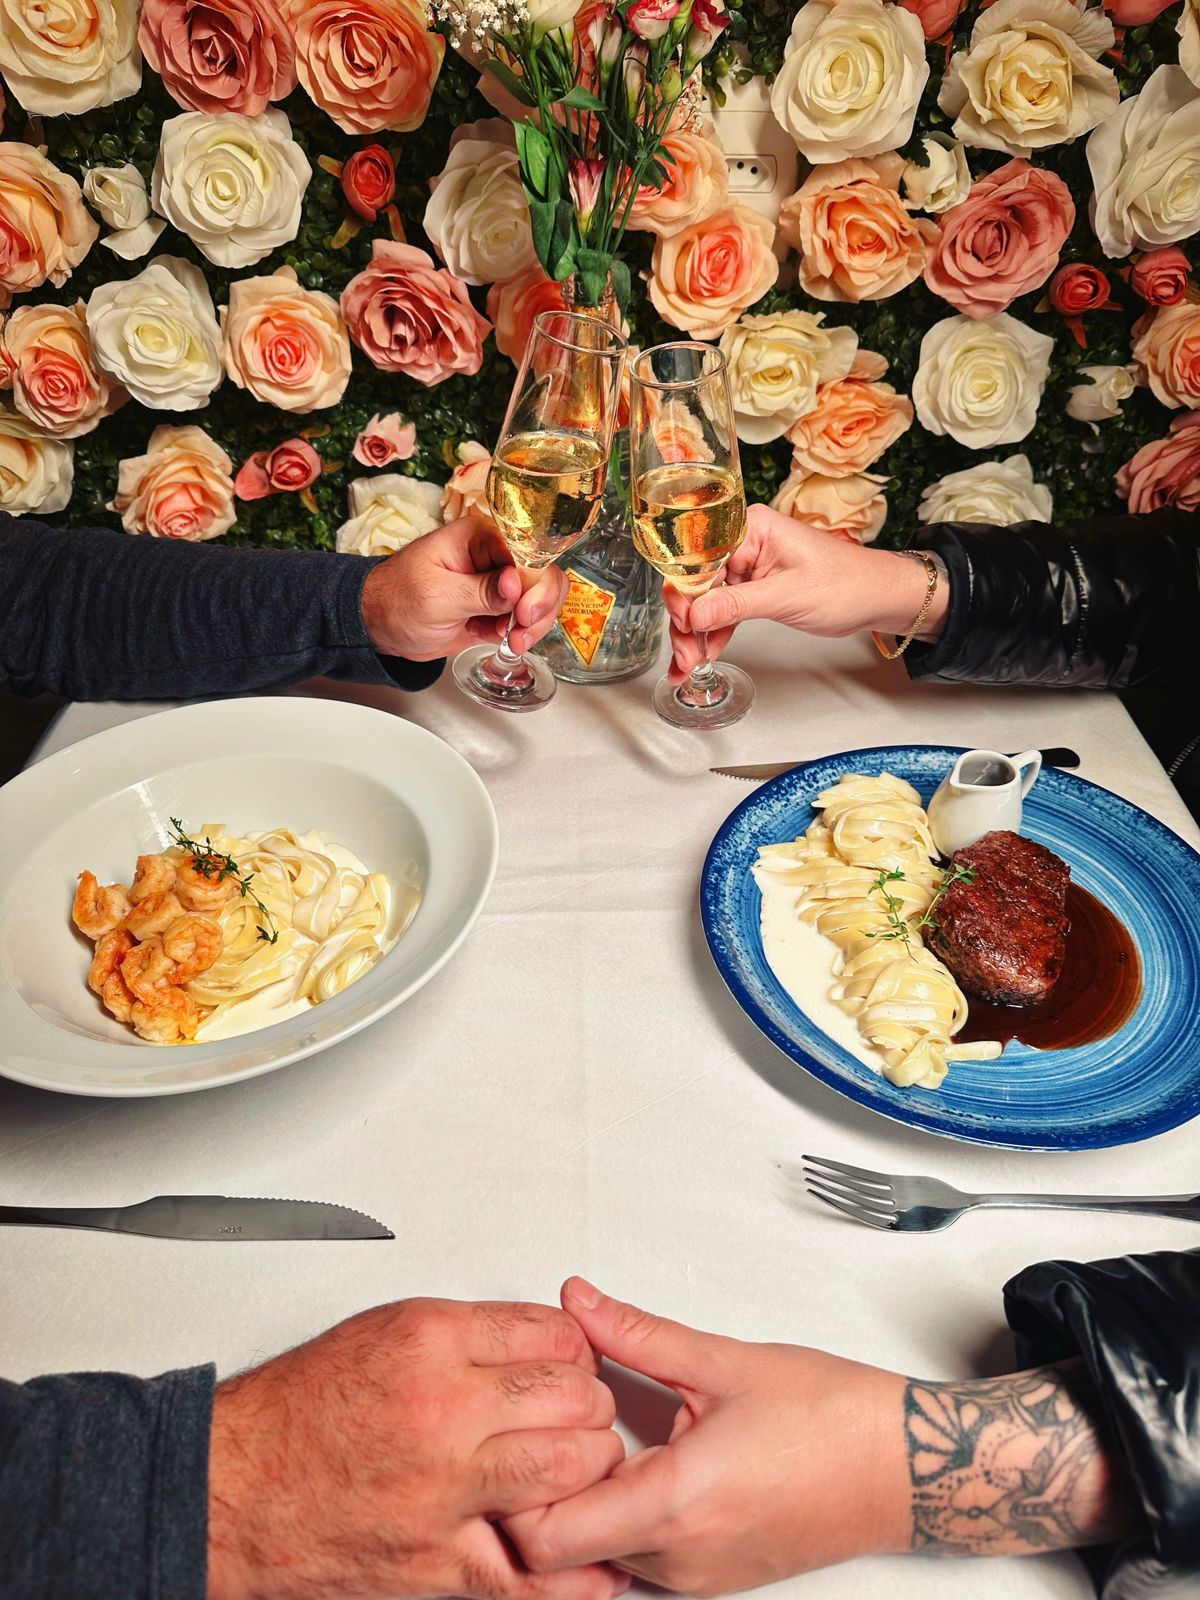 Sforno Trattoria comemora o Dia dos Namorados com três noites especiais e menu completo aos casais